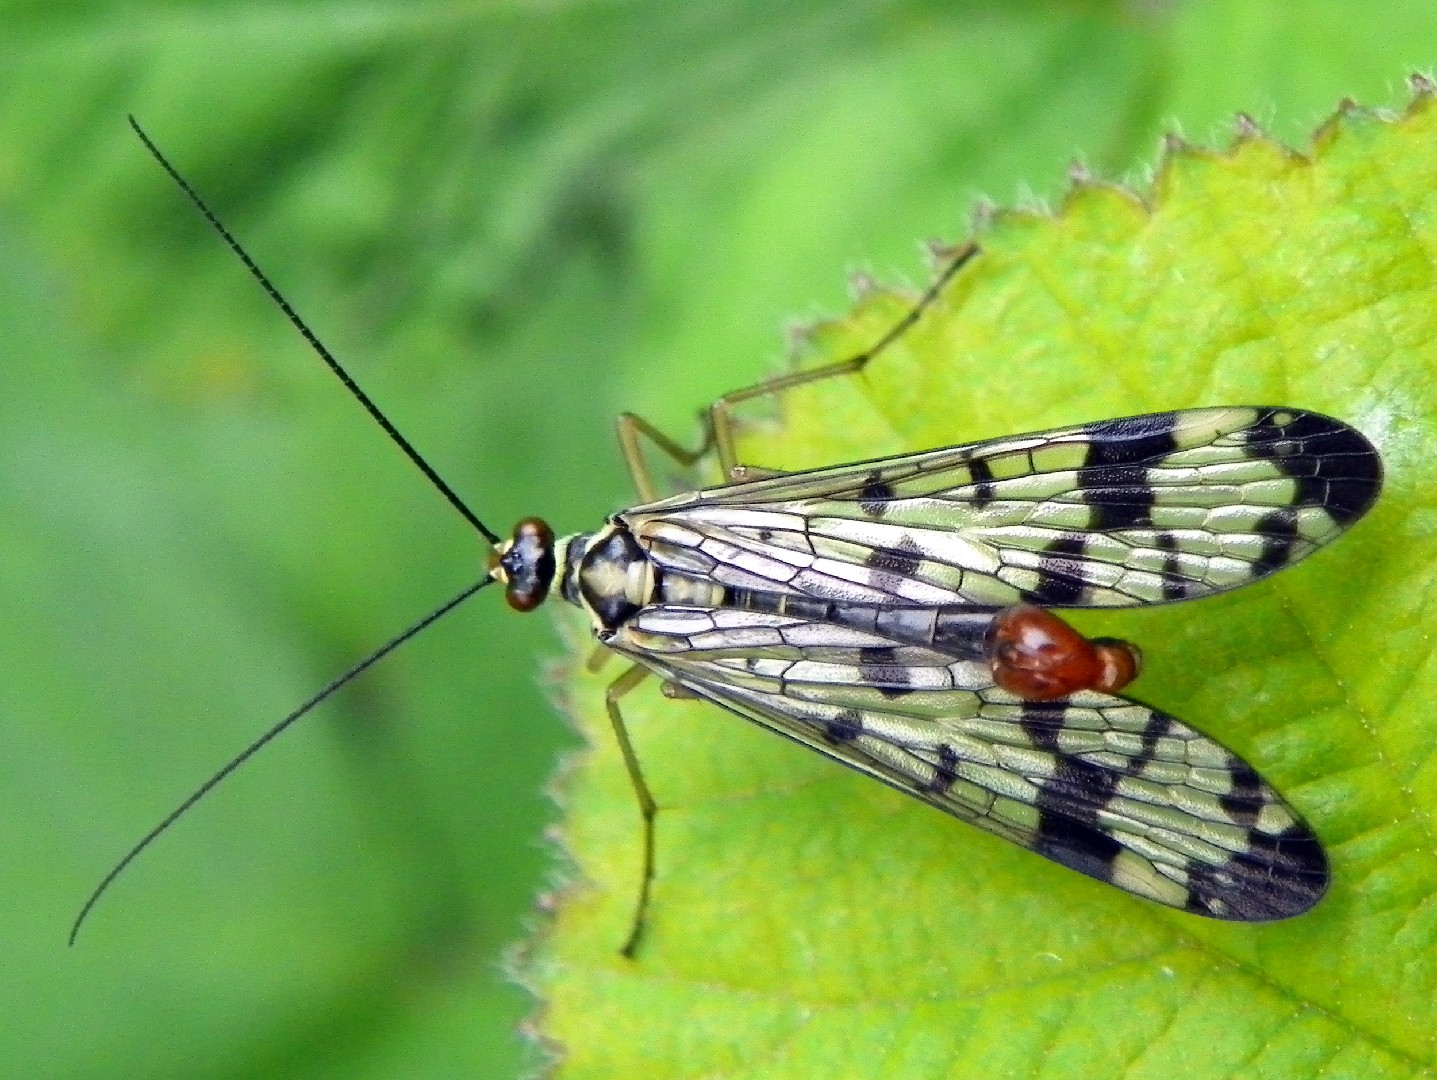 マダラシリアゲムシ (Panorpa communis)